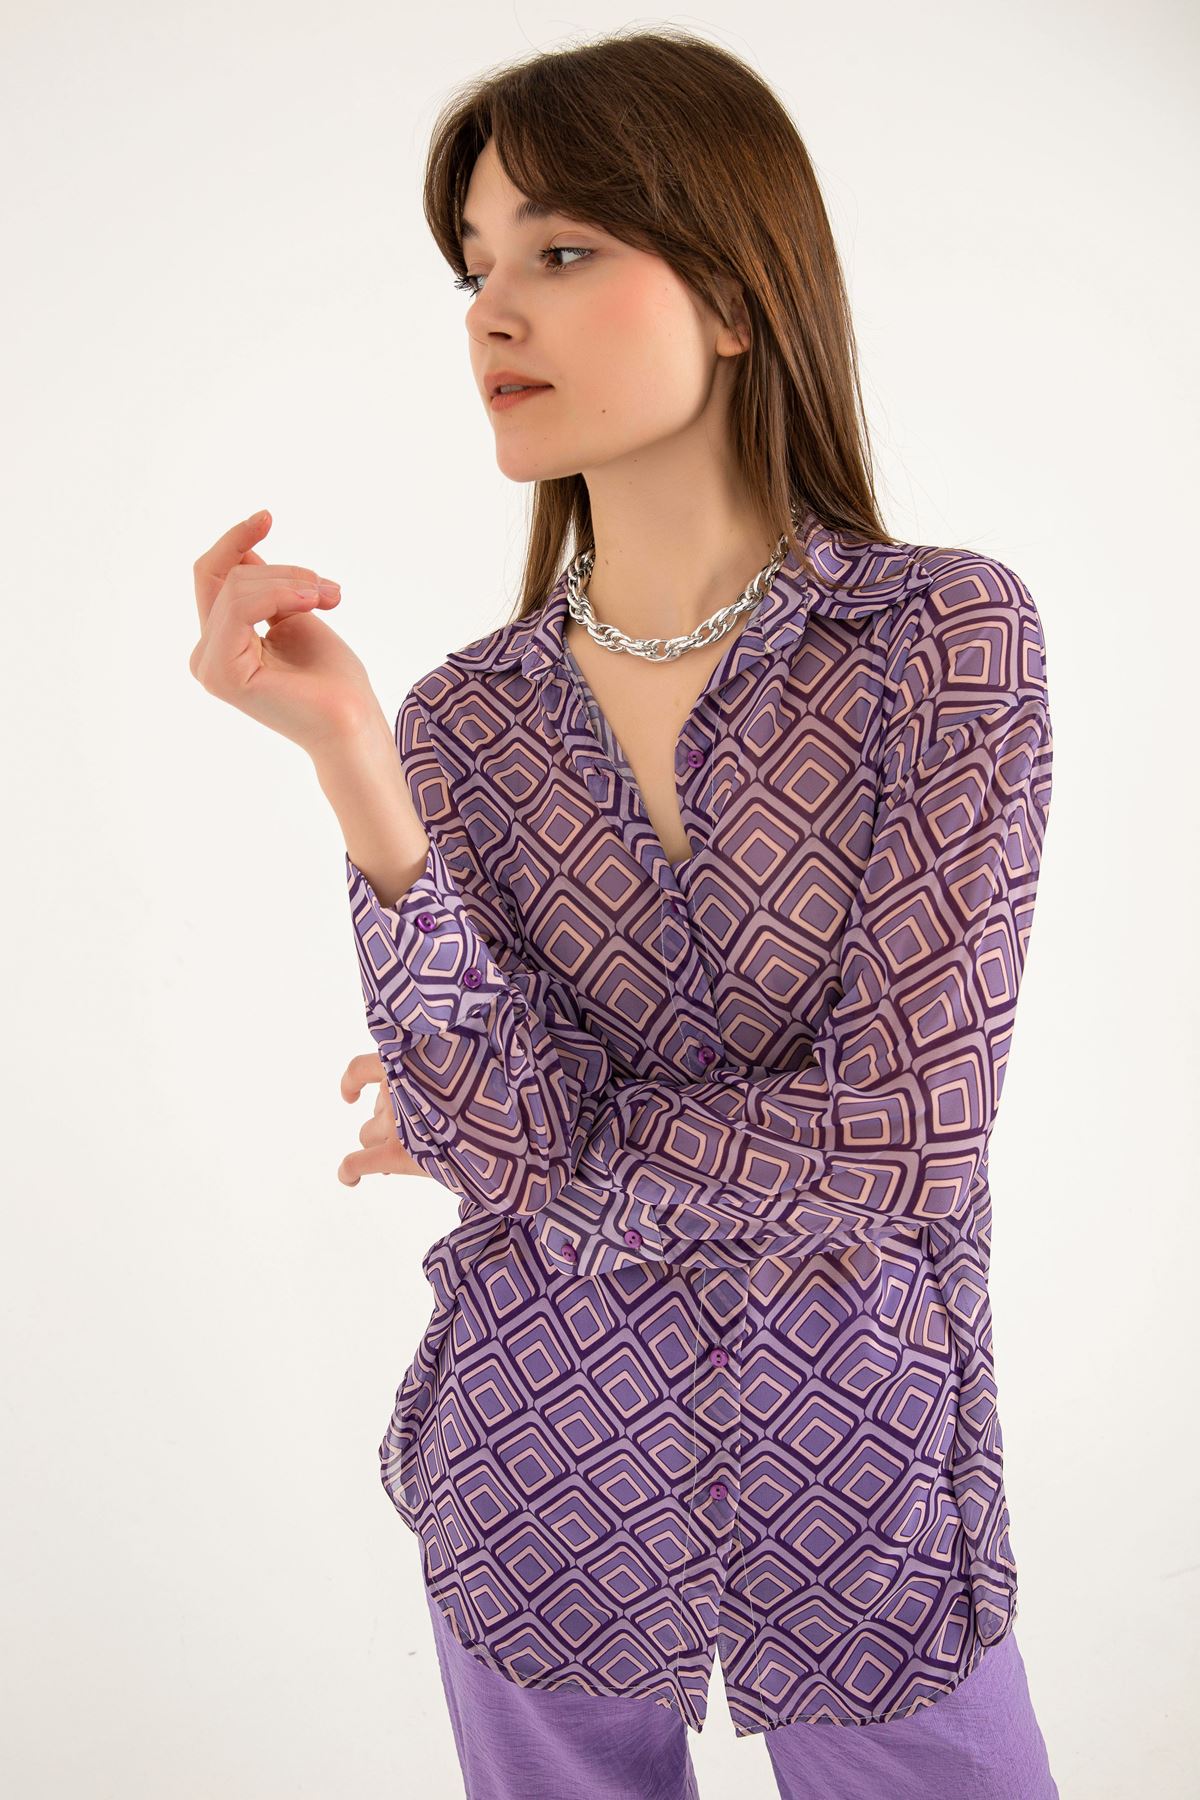 Chiffon Fabric Full Fit Geometric Pattern Women Shirt - Lilac